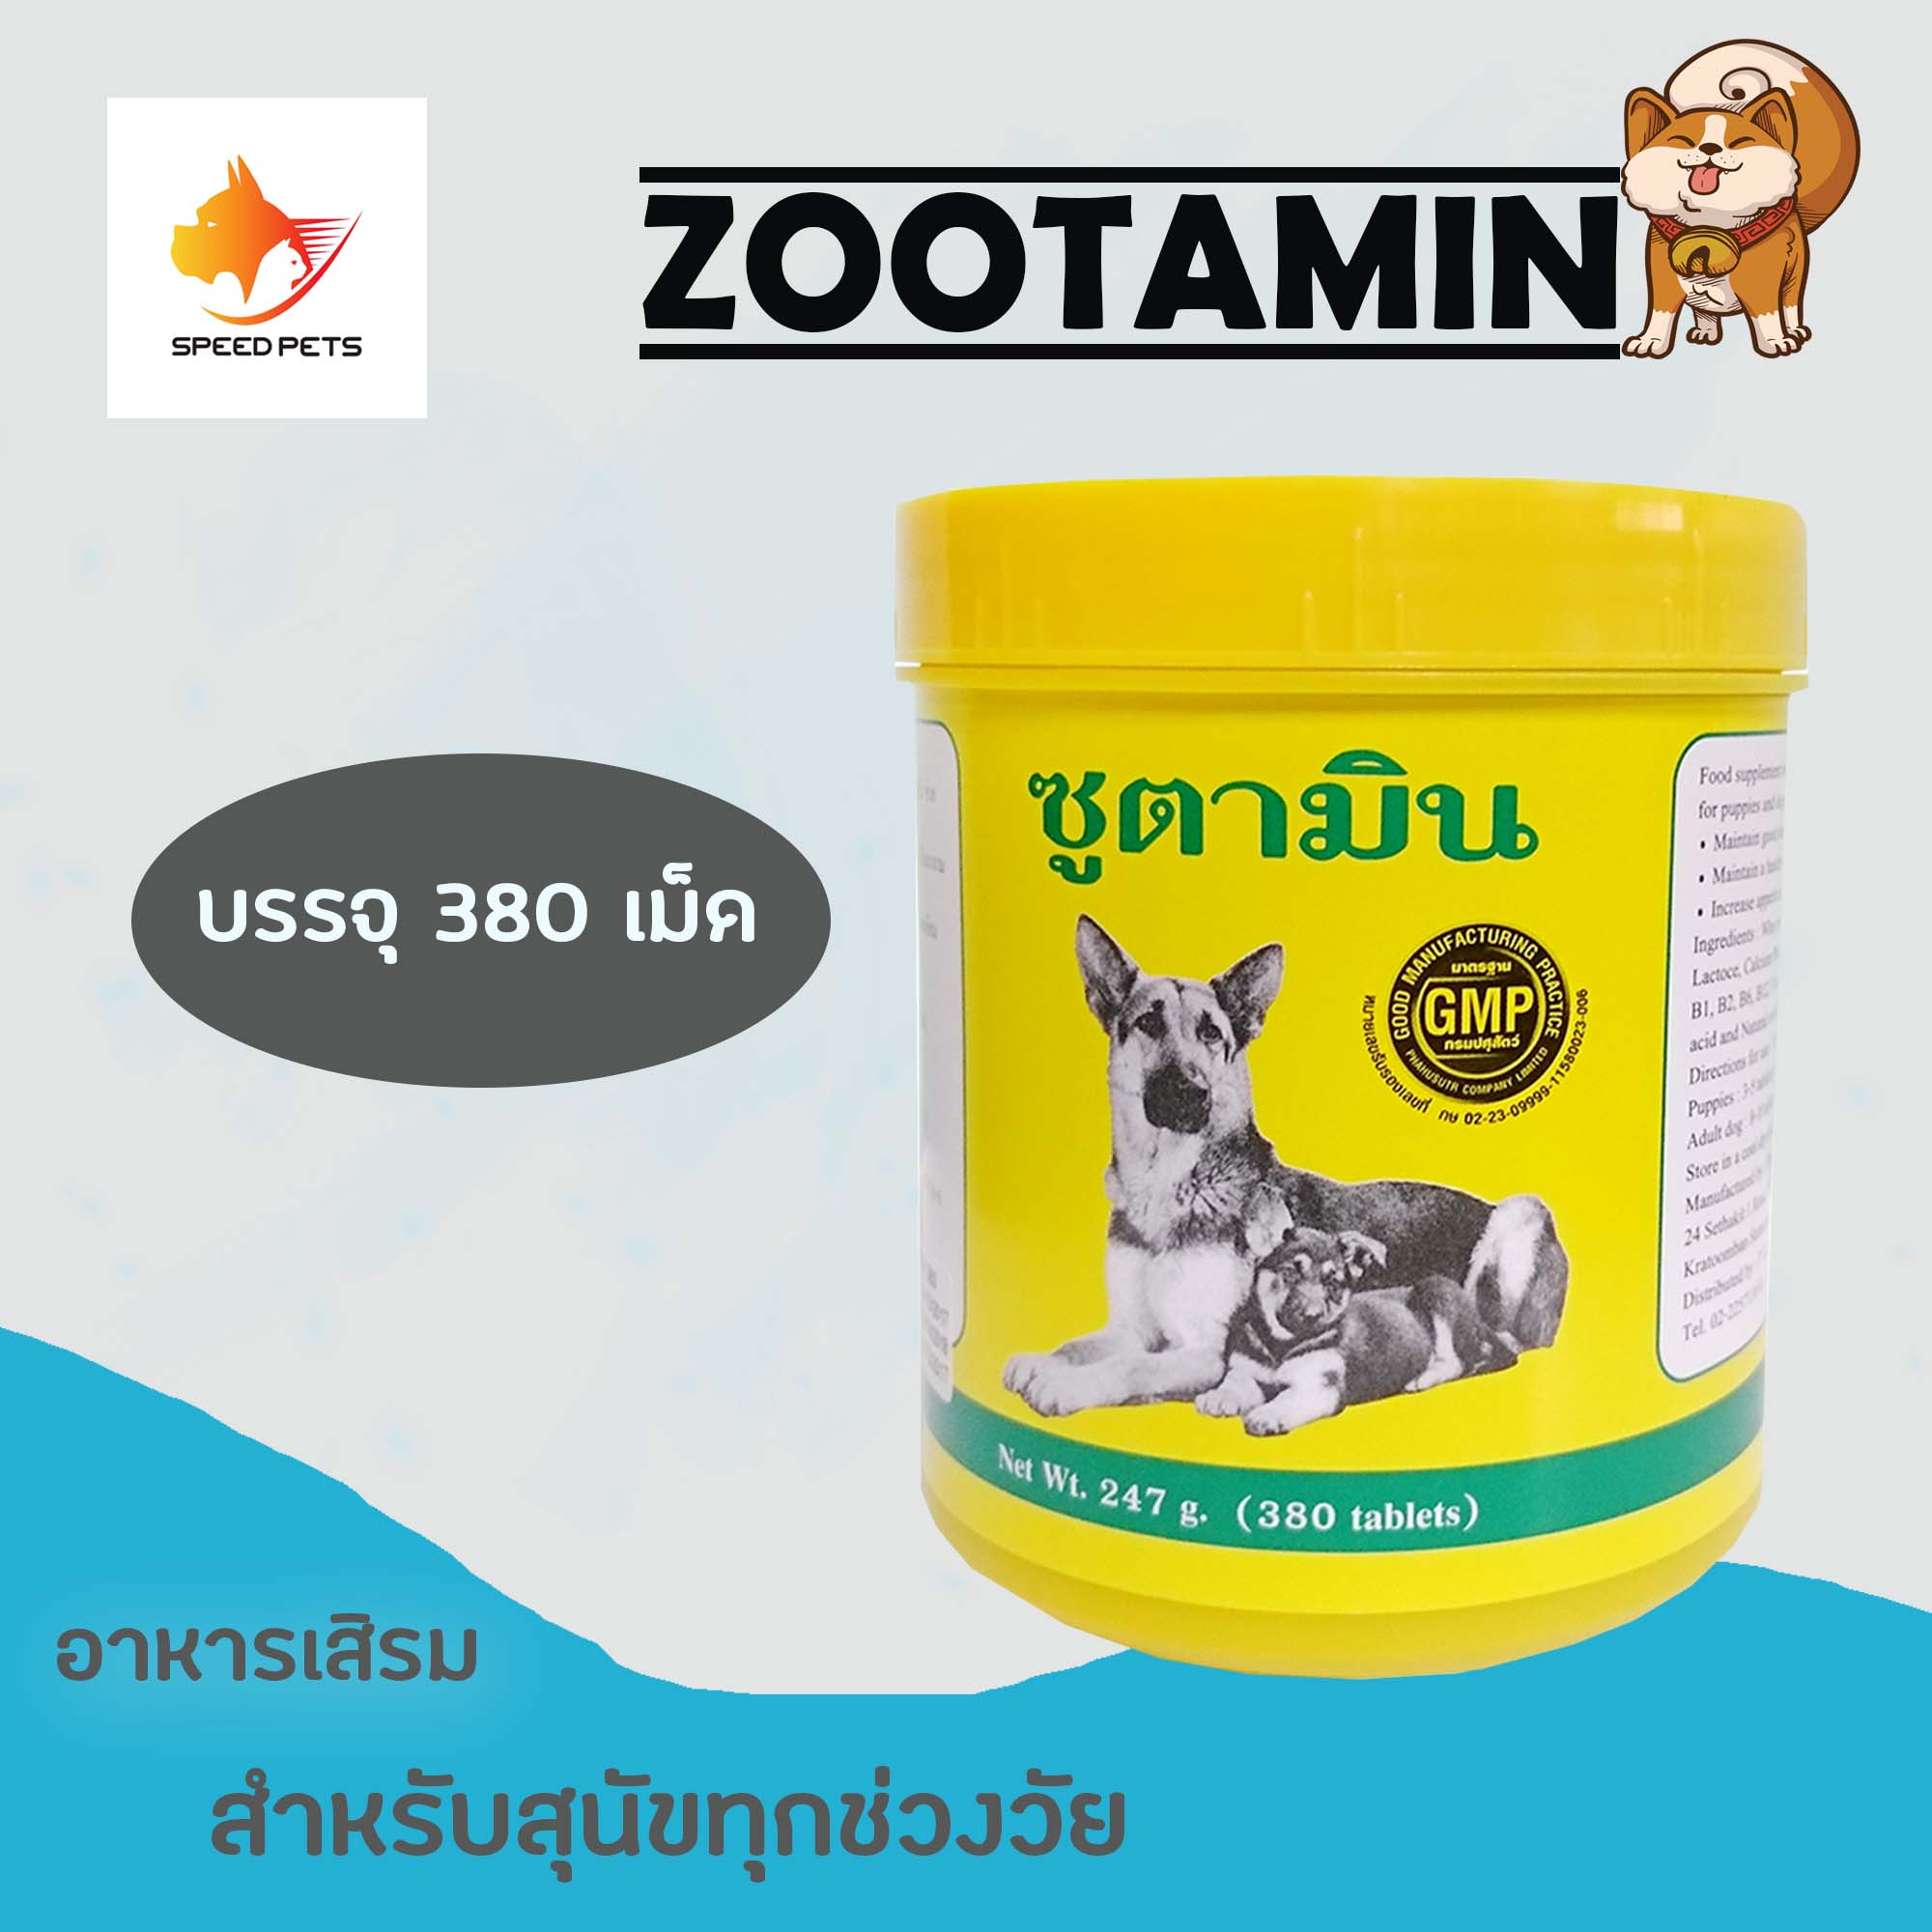 Zootamin 380 อาหารเสริม วิตามิน ช่วยเจริญ อาหาร ขนาด 380 เม็ด